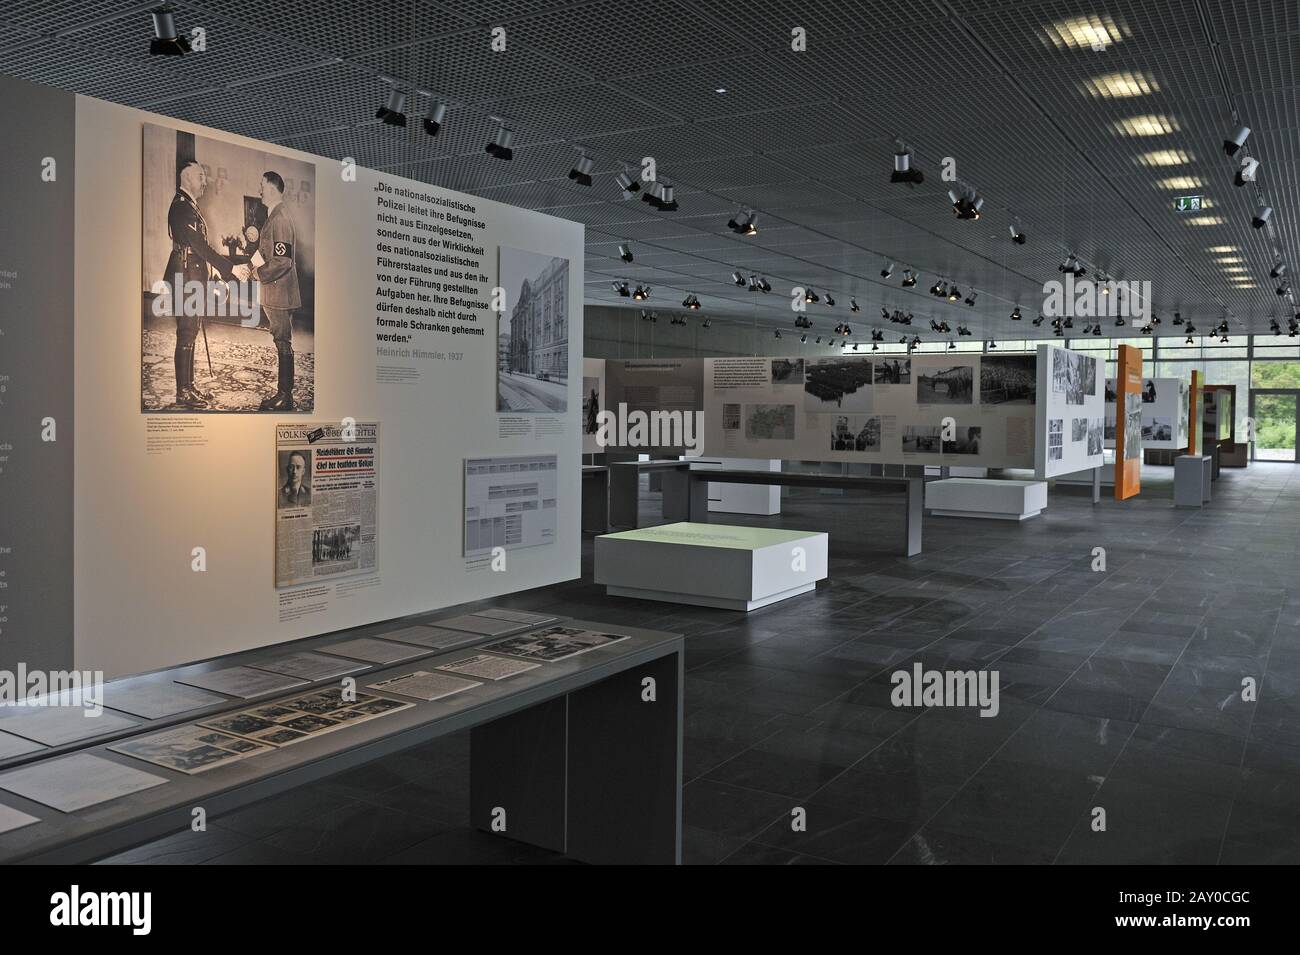 Nuevo diseño interior de la exposición Topography of Terror en el sitio de la antigua sede de las SS, Berlín, Alemania, Europ Foto de stock